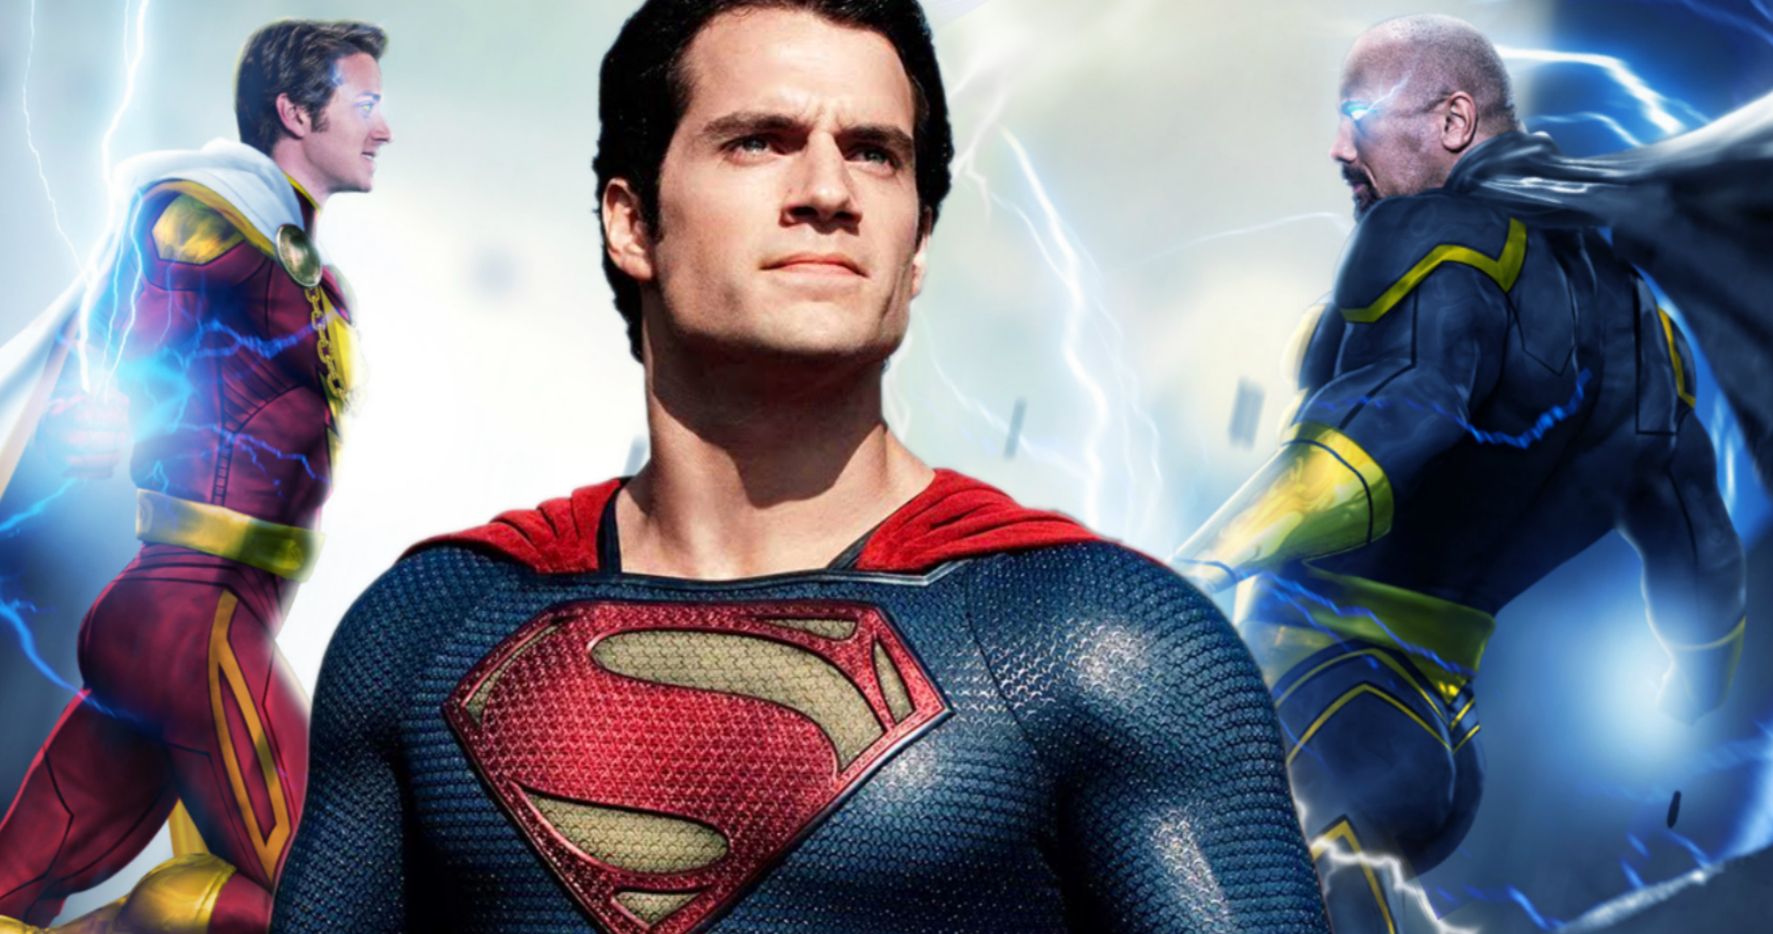 Will Henry Cavill's Superman Return in Black Adam?